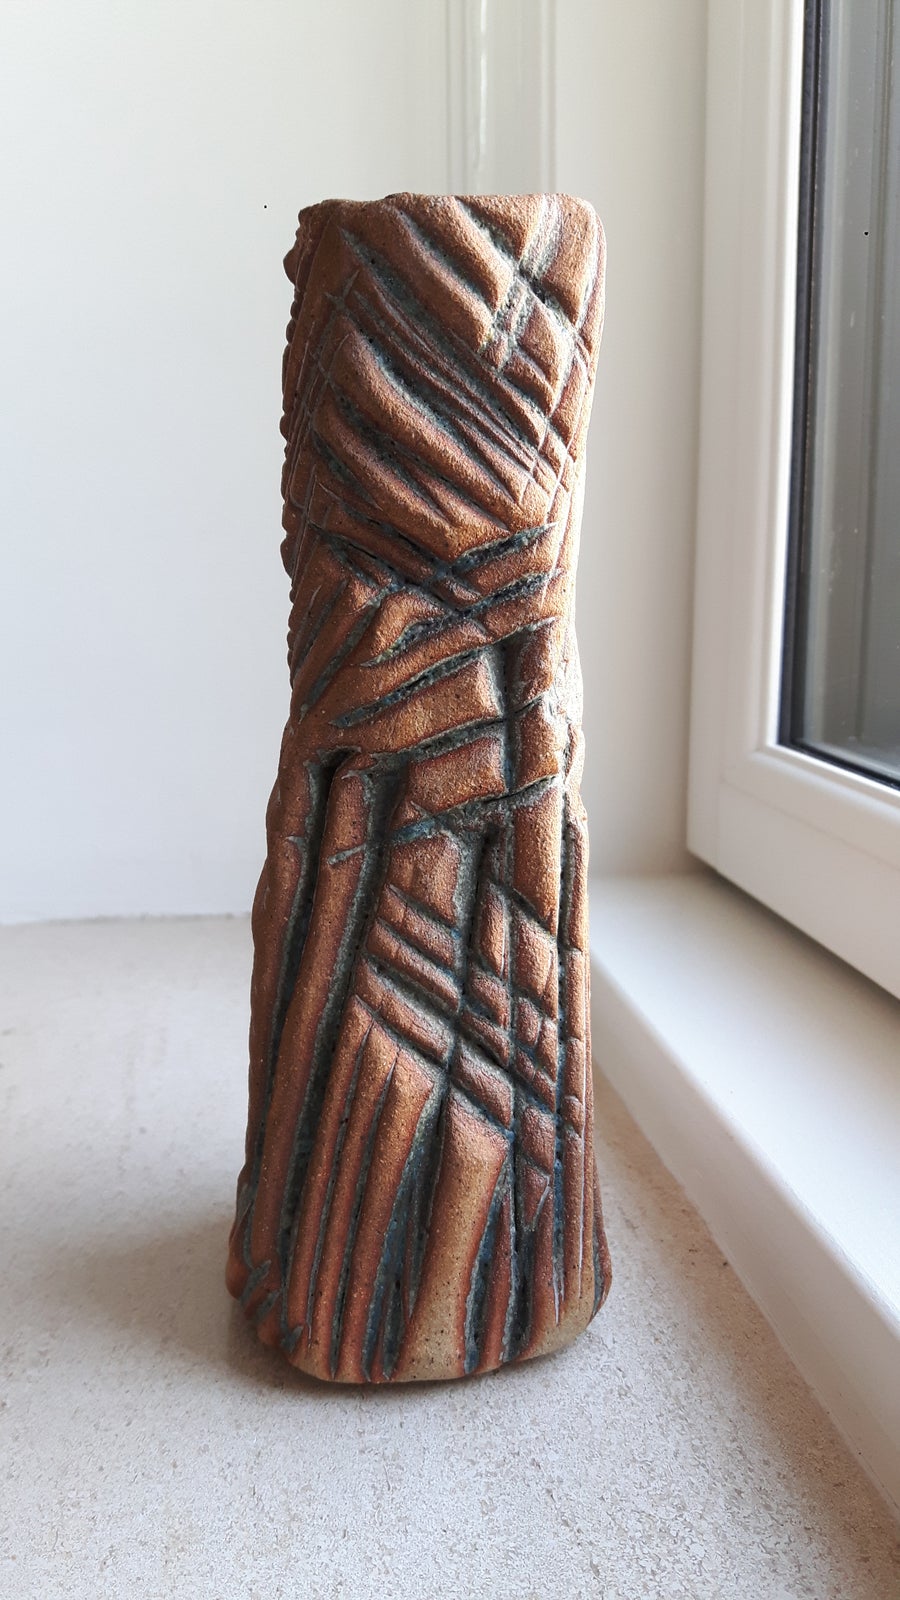 Lysestage Skulptur, Anette Nørregaard, motiv: